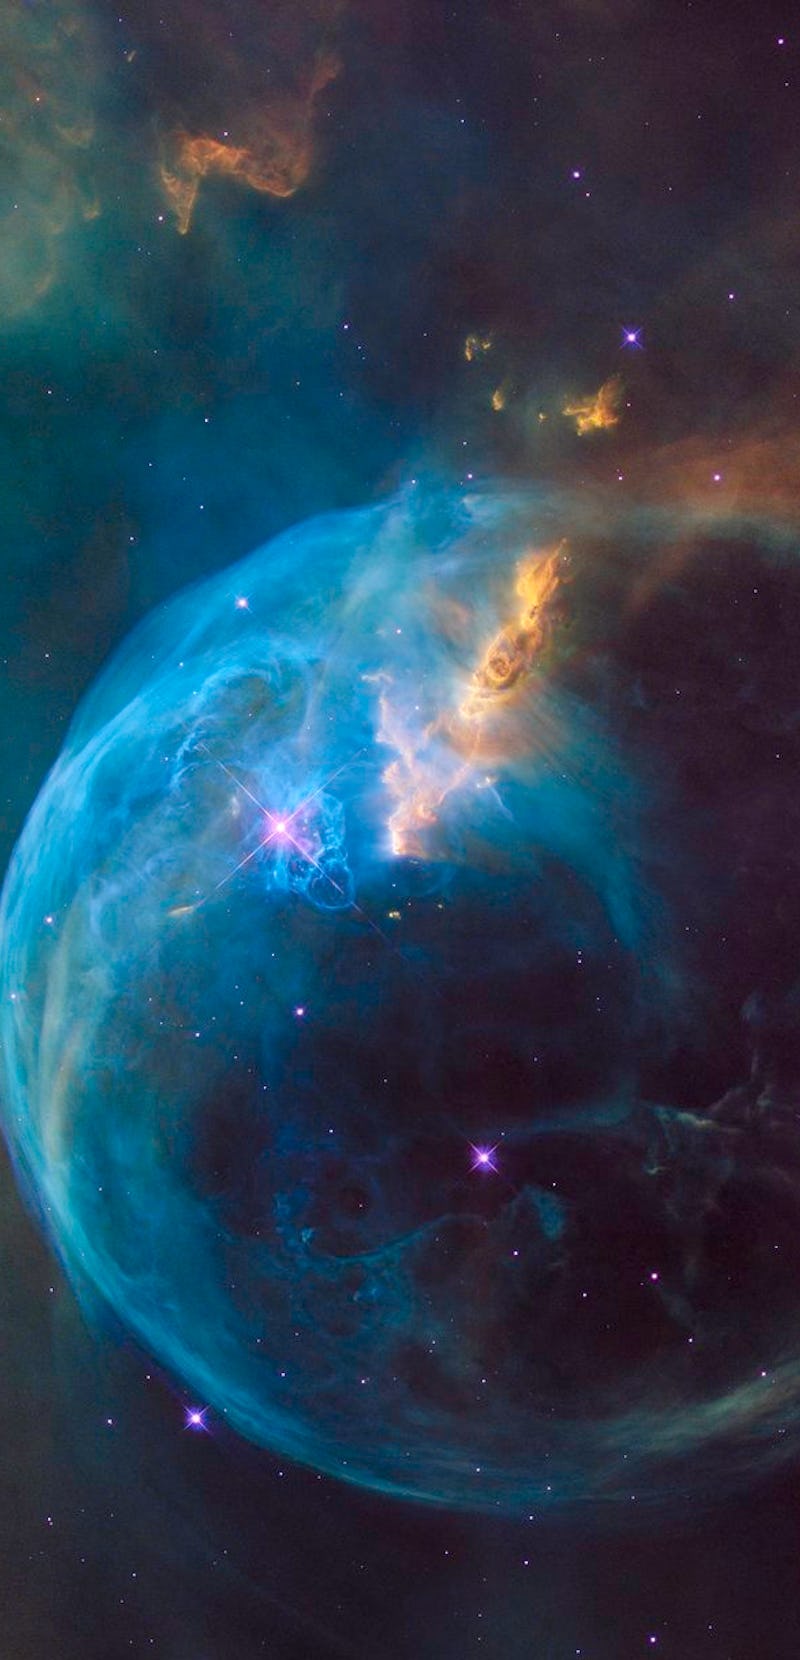 Hubble image of a nebula